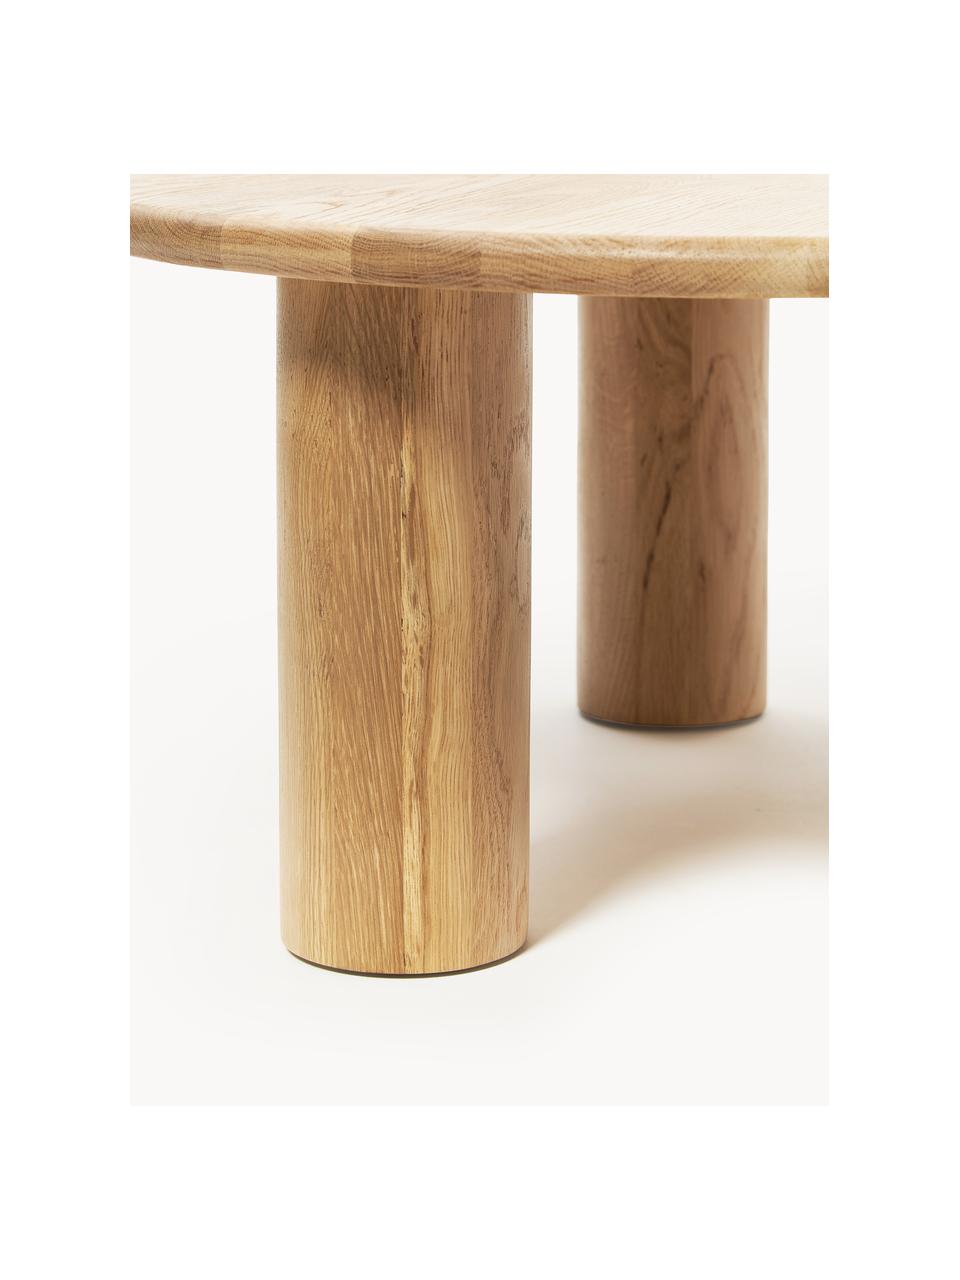 Okrúhly konferenčný stolík z dubového dreva Didi, Masívne dubové drevo, ošetrené olejom

Tento produkt je vyrobený z trvalo udržateľného dreva s certifikátom FSC®., Dubové drevo, ošetrené olejom, Ø 80 cm